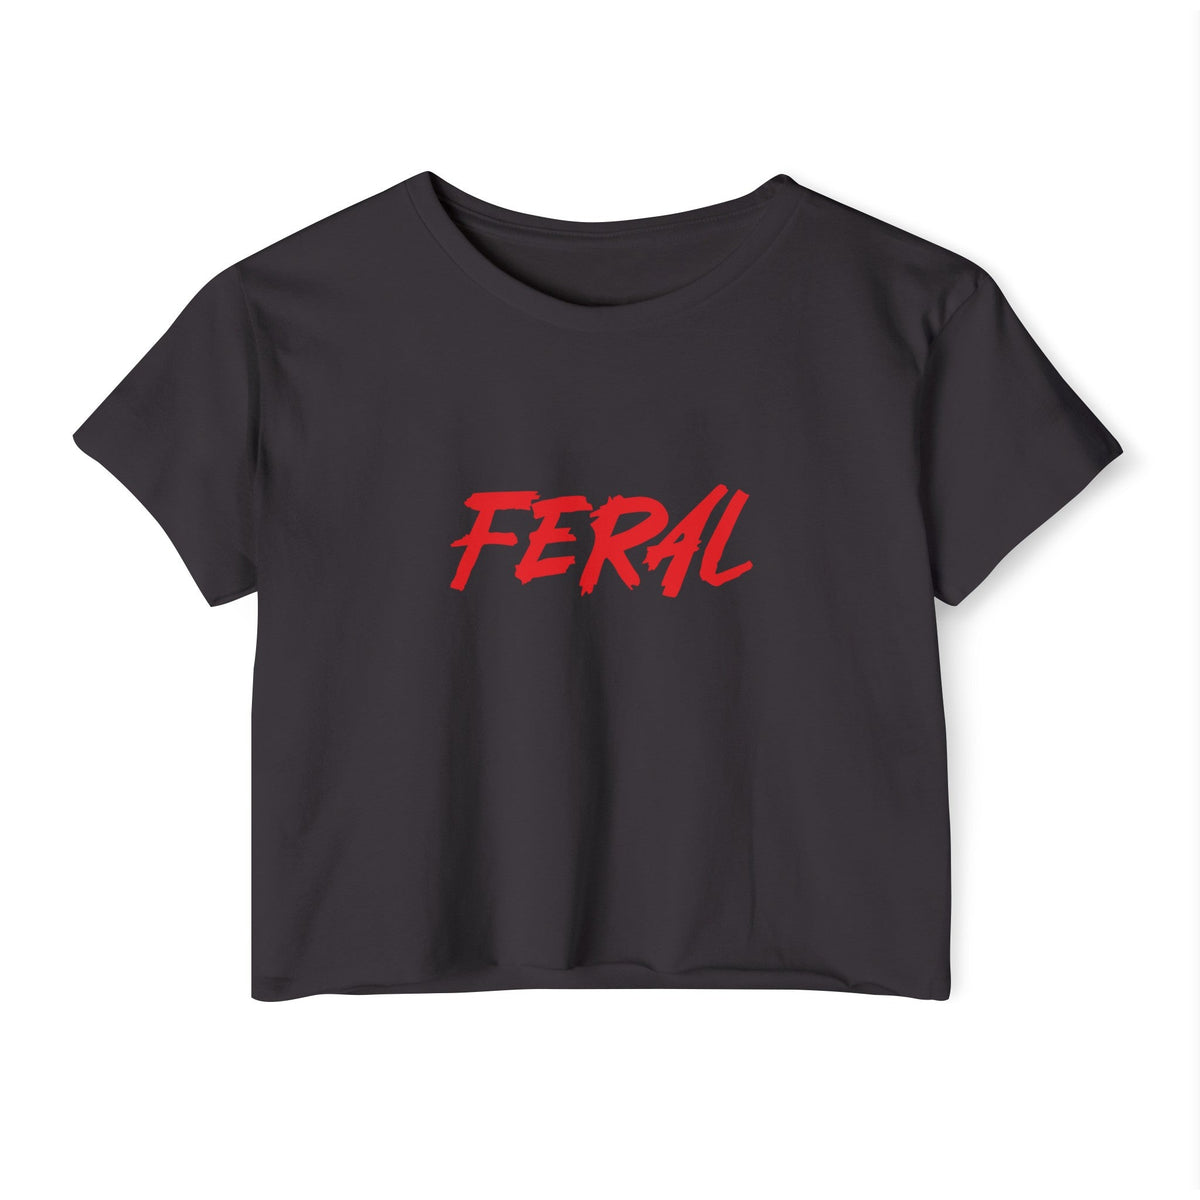 FERAL Women's Lightweight Crop Top - Goth Cloth Co.T - Shirt83326736340116629472